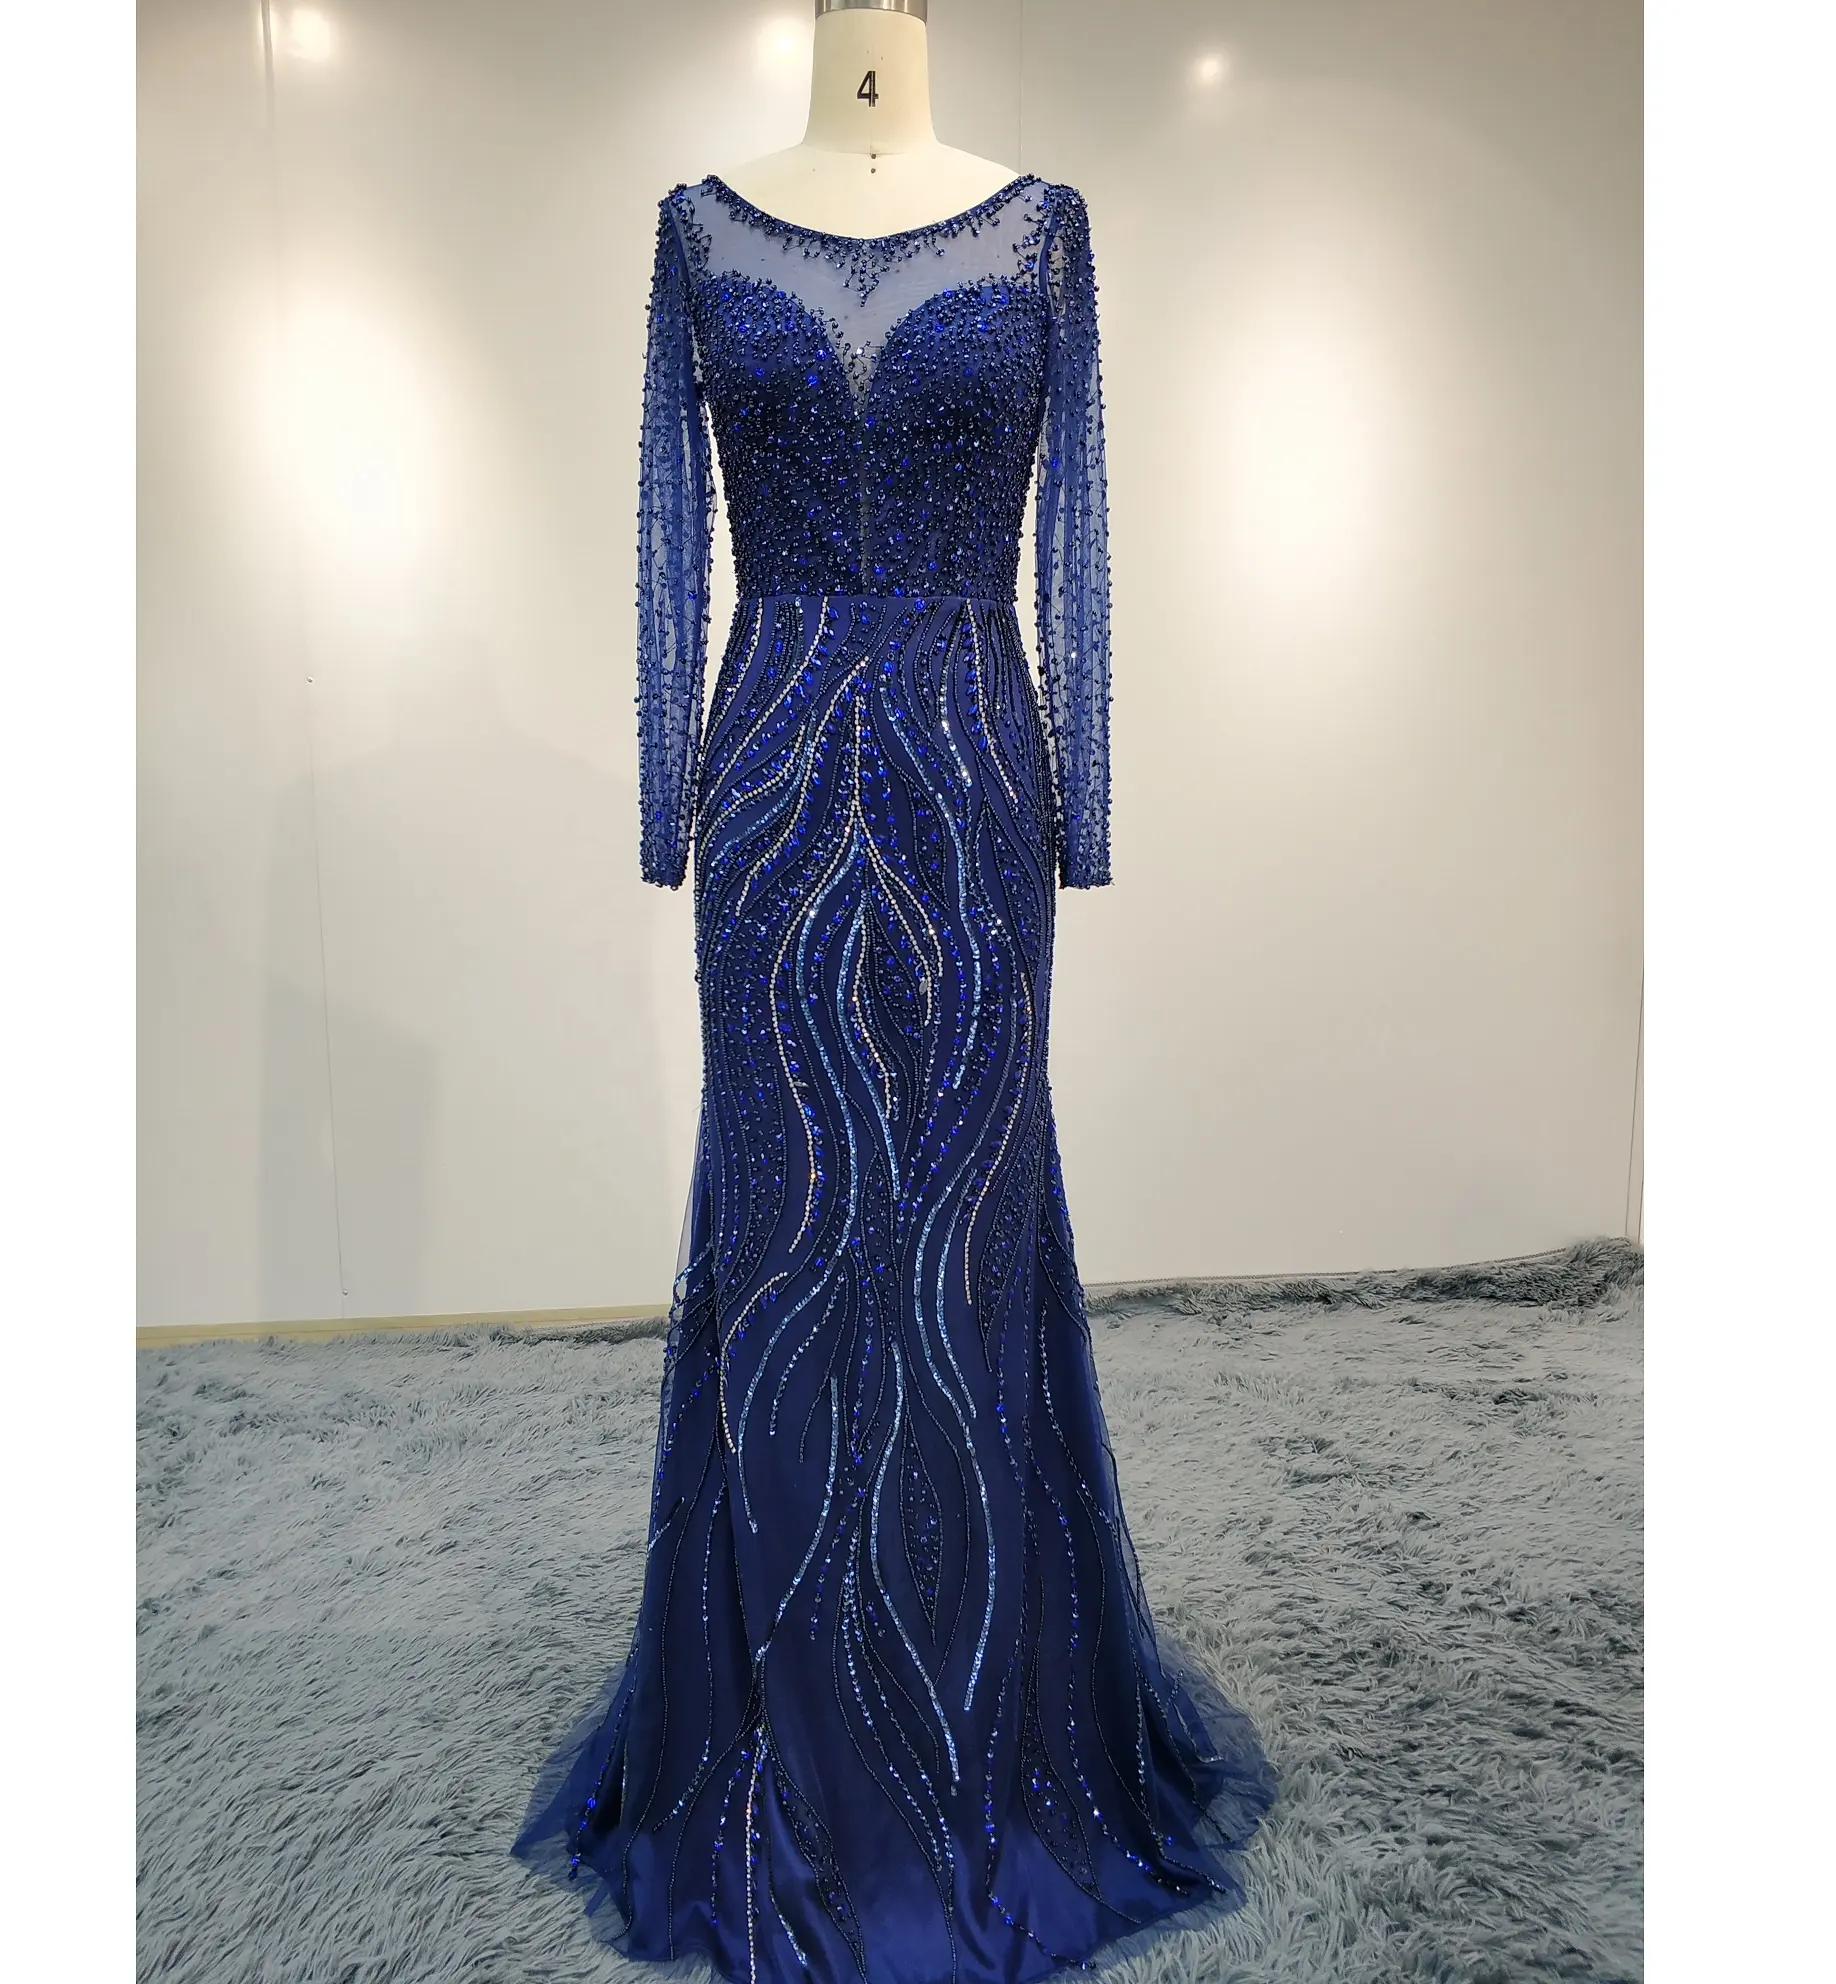 Robe de soirée dorée/bleue Royal, tenue de soirée de luxe, avec perles et cristaux, style arabe, de haute qualité, nouvelle collection, dubaï, 2019